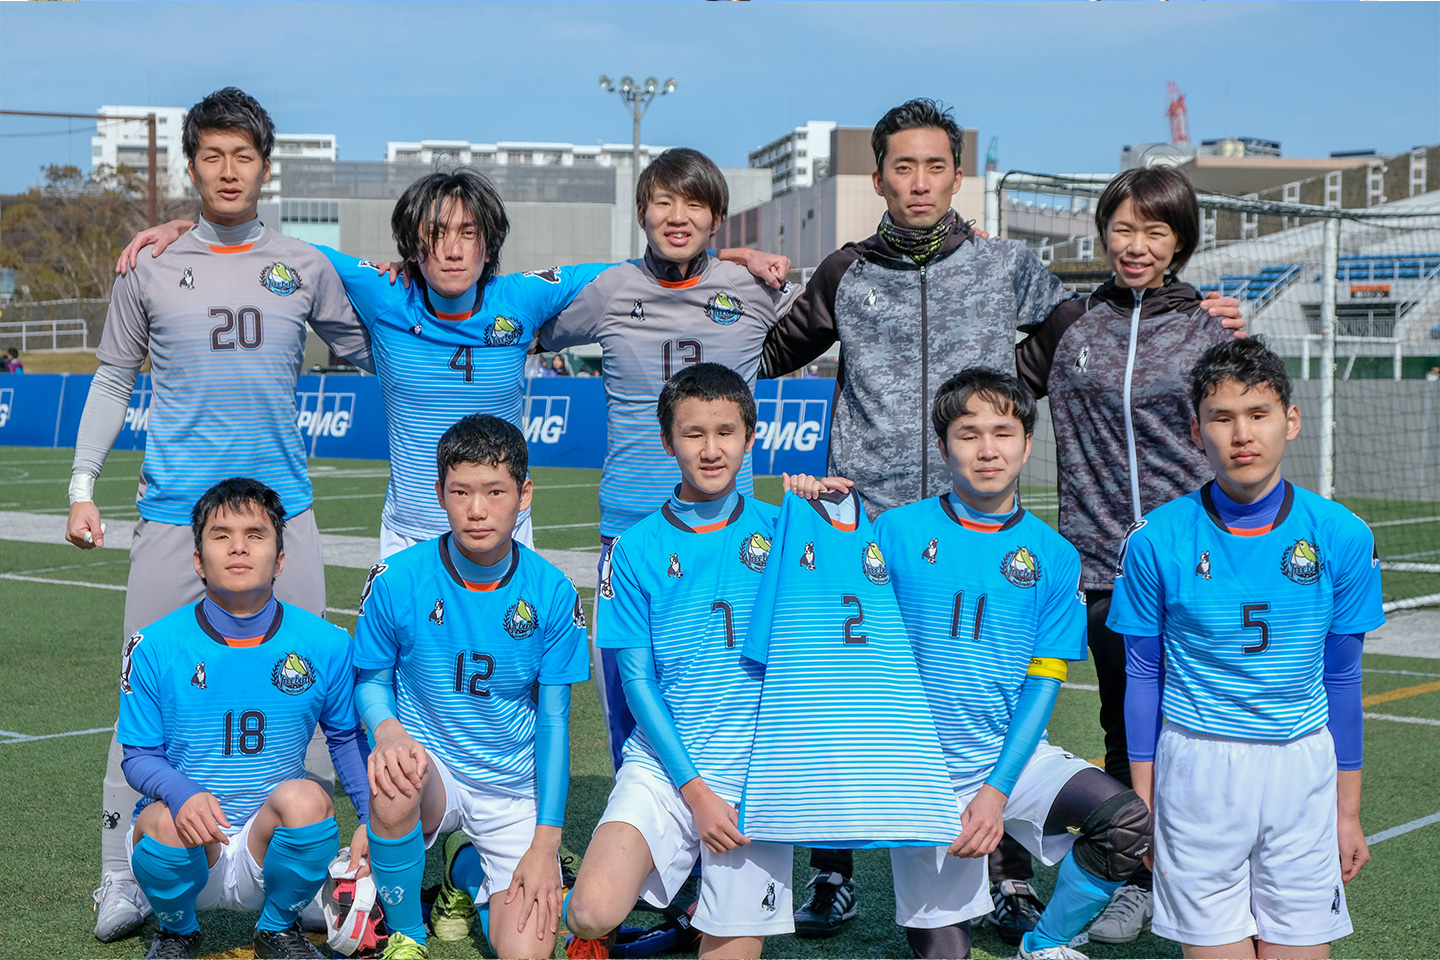 クラブチーム 日本ブラインドサッカー協会 Blind Soccer